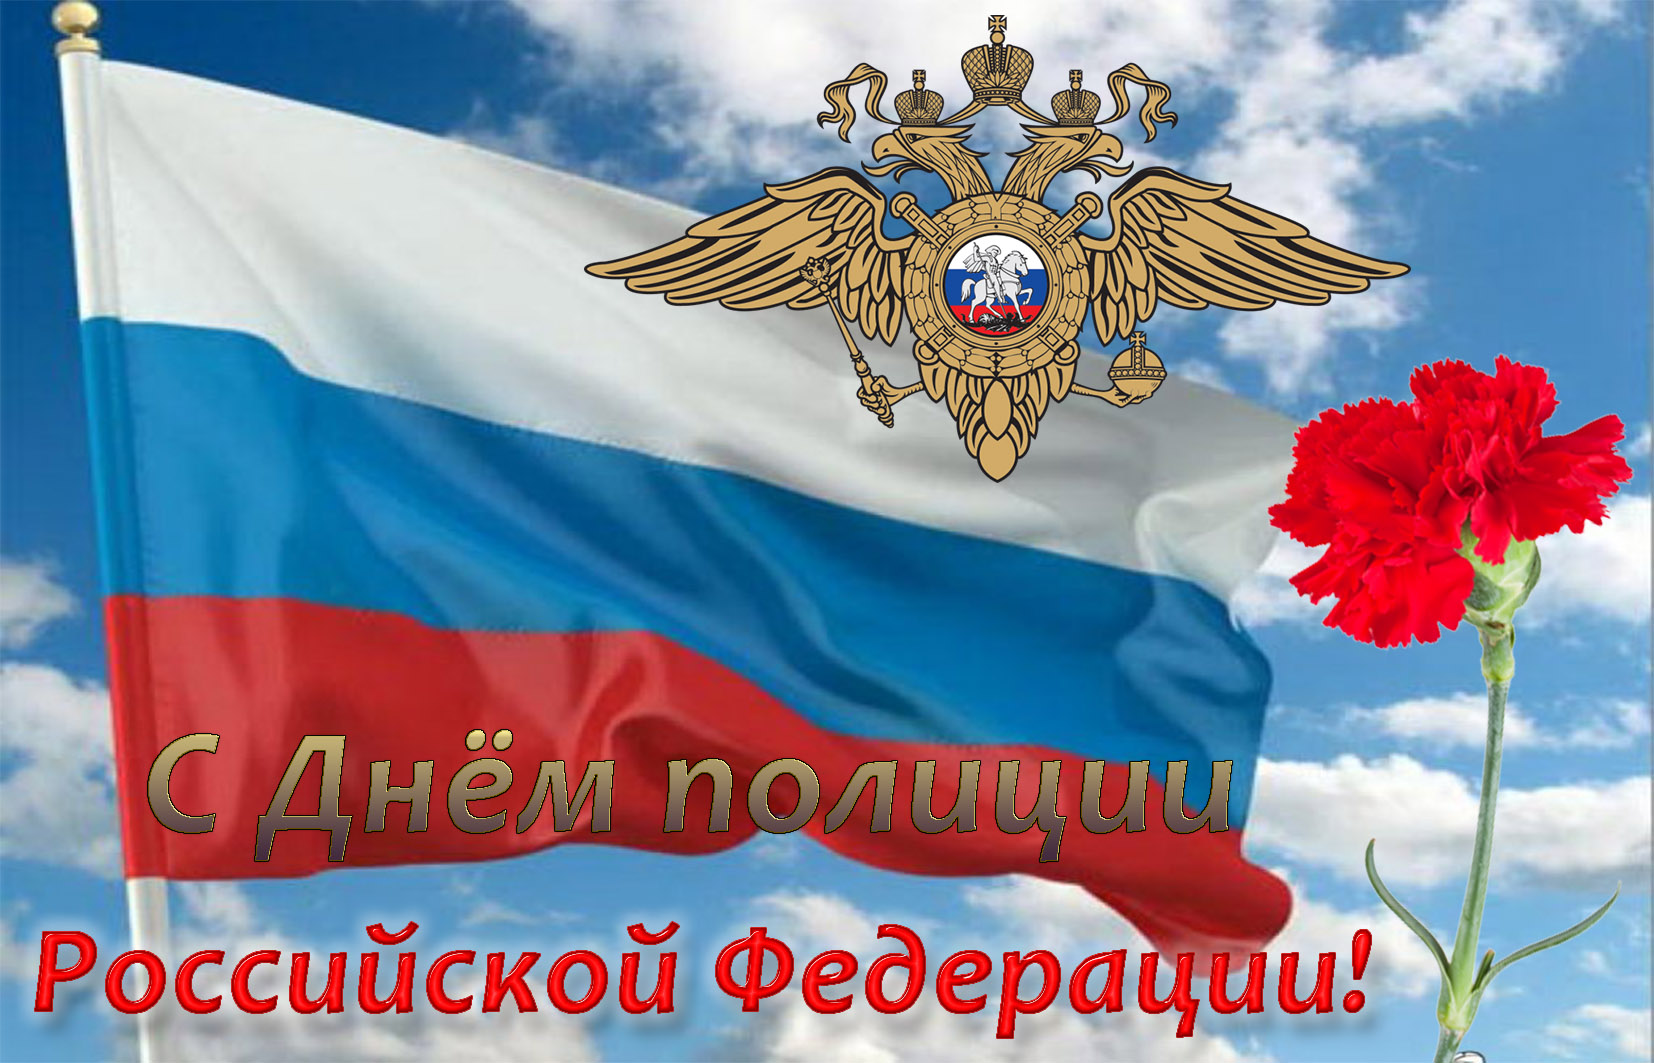 Открытка на День полиции - красная гвоздика на фоне флага России